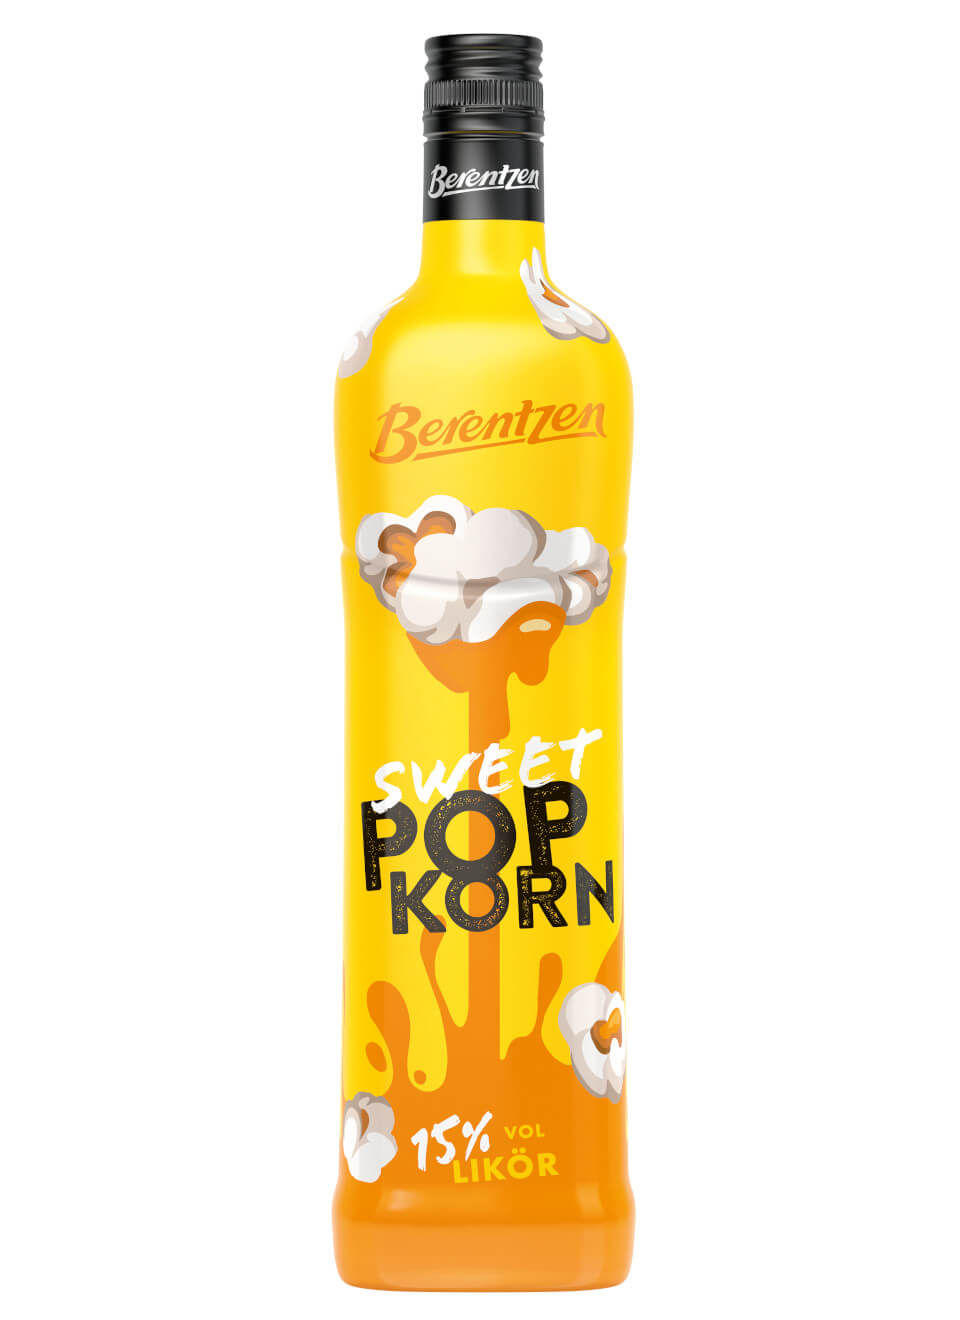 Berentzen Popkorn Likör 0,7 L günstig kaufen   - Online  Shop für Spirituosen und Barzubehör